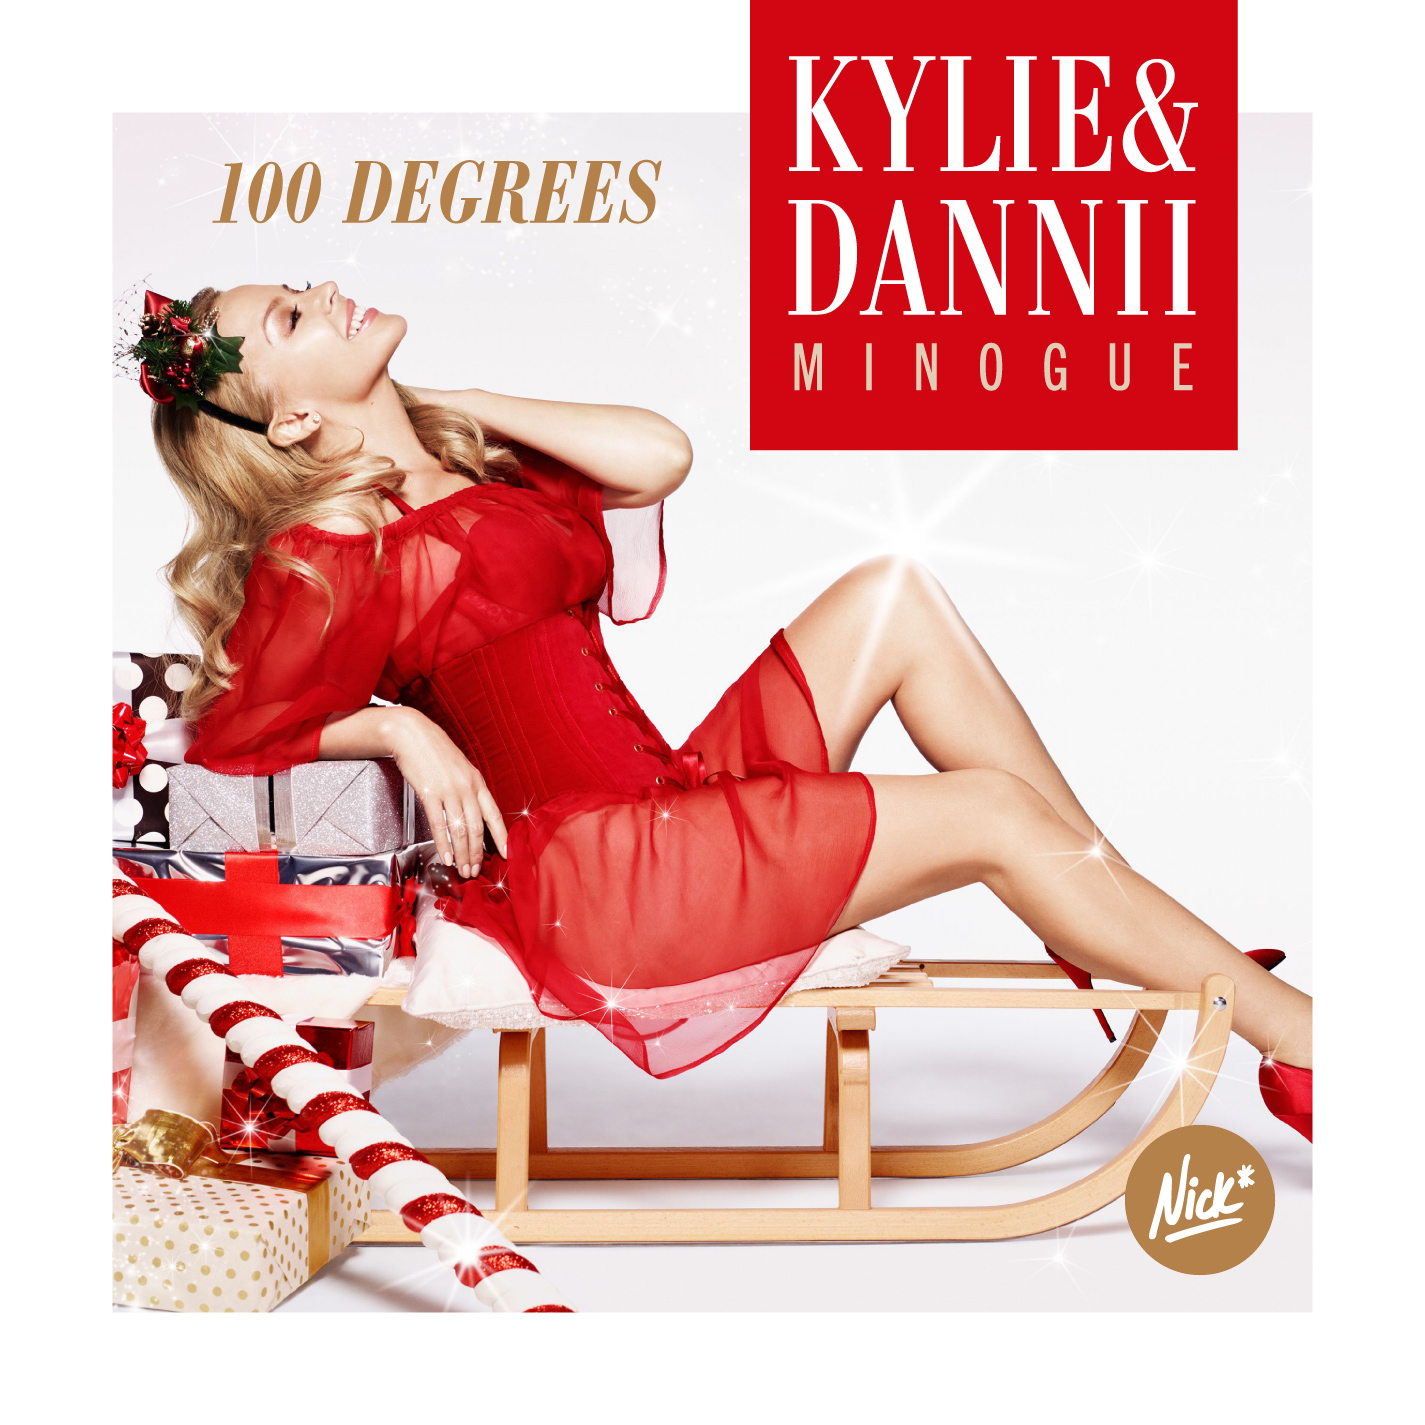 Kylie & Dannii Minogue - 100 Degrees Nick* Remix